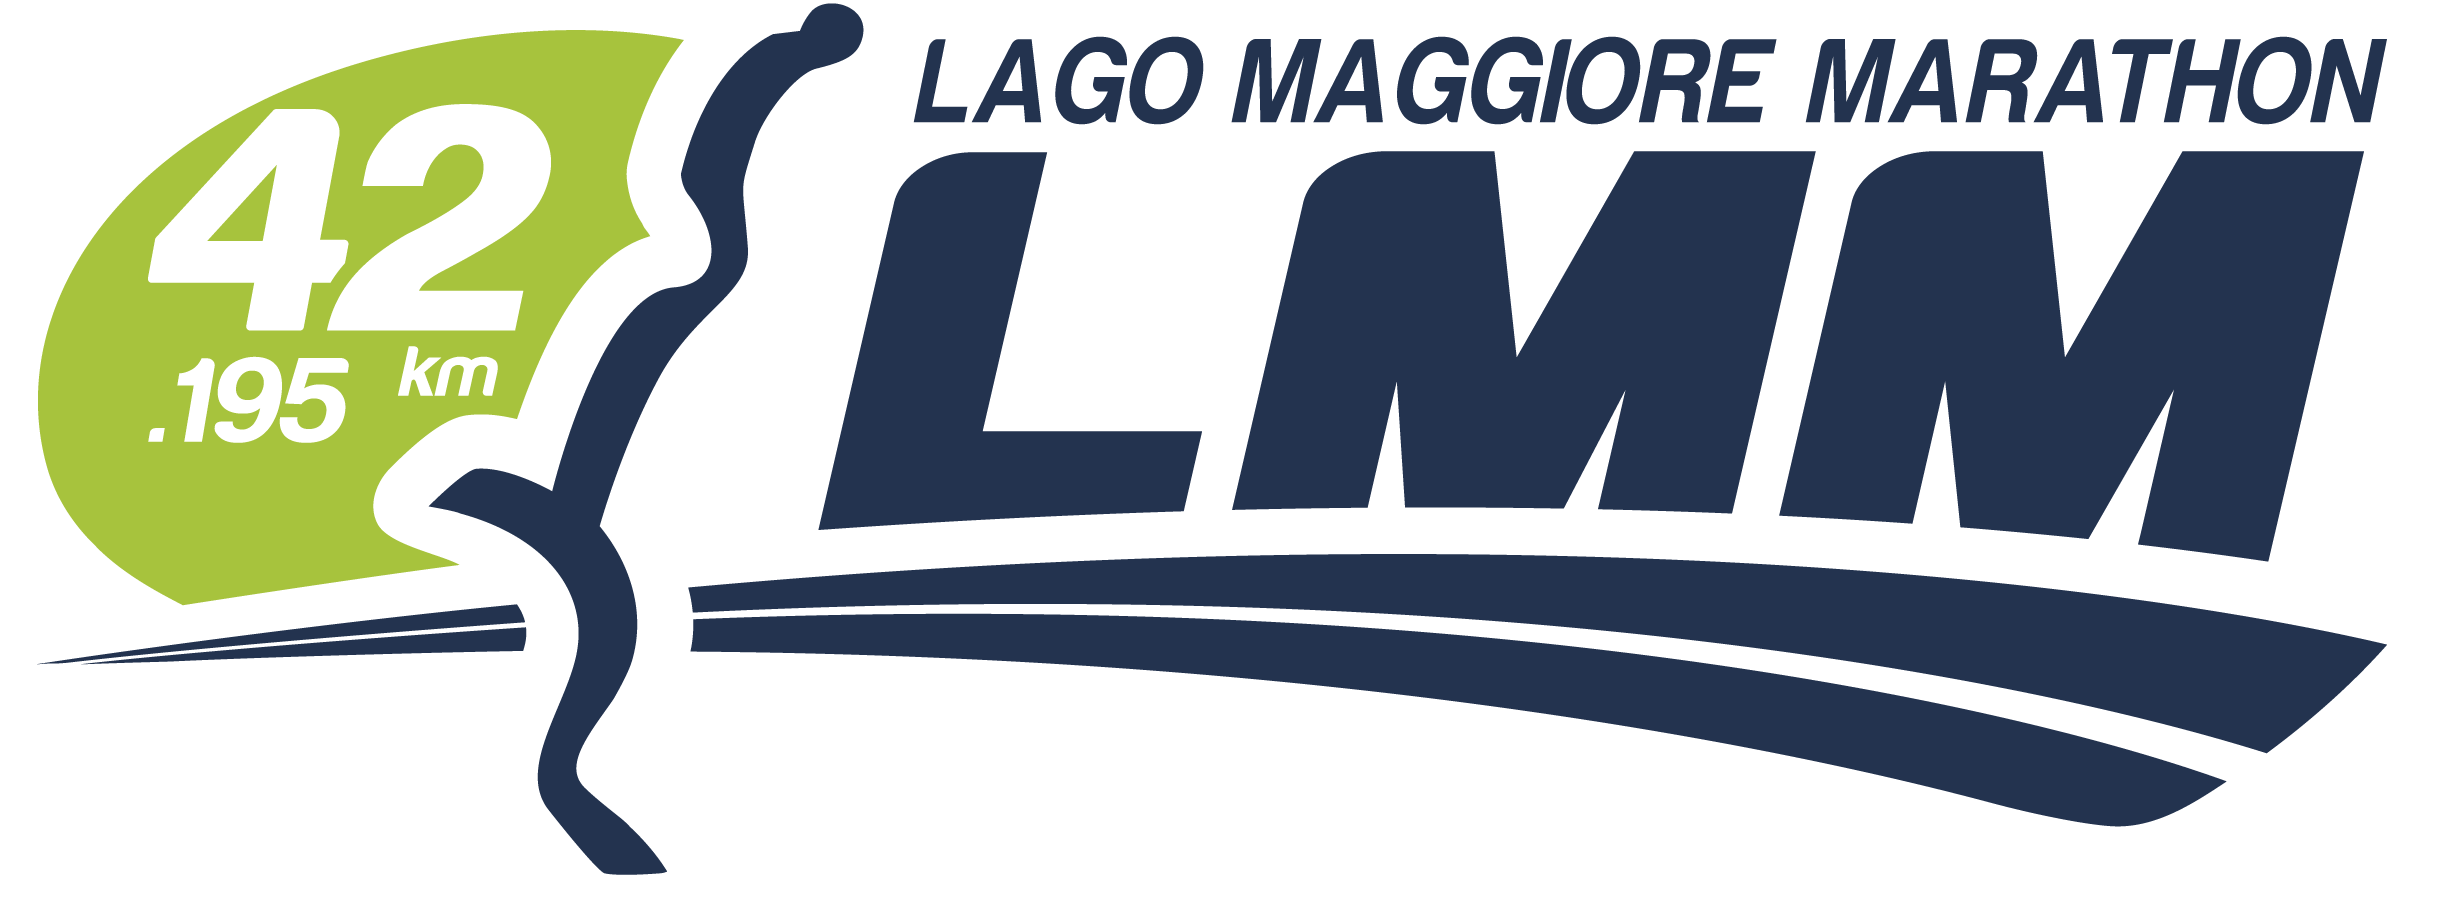 LAGO MAGGIORE MARATHON XIII EDIZIONE